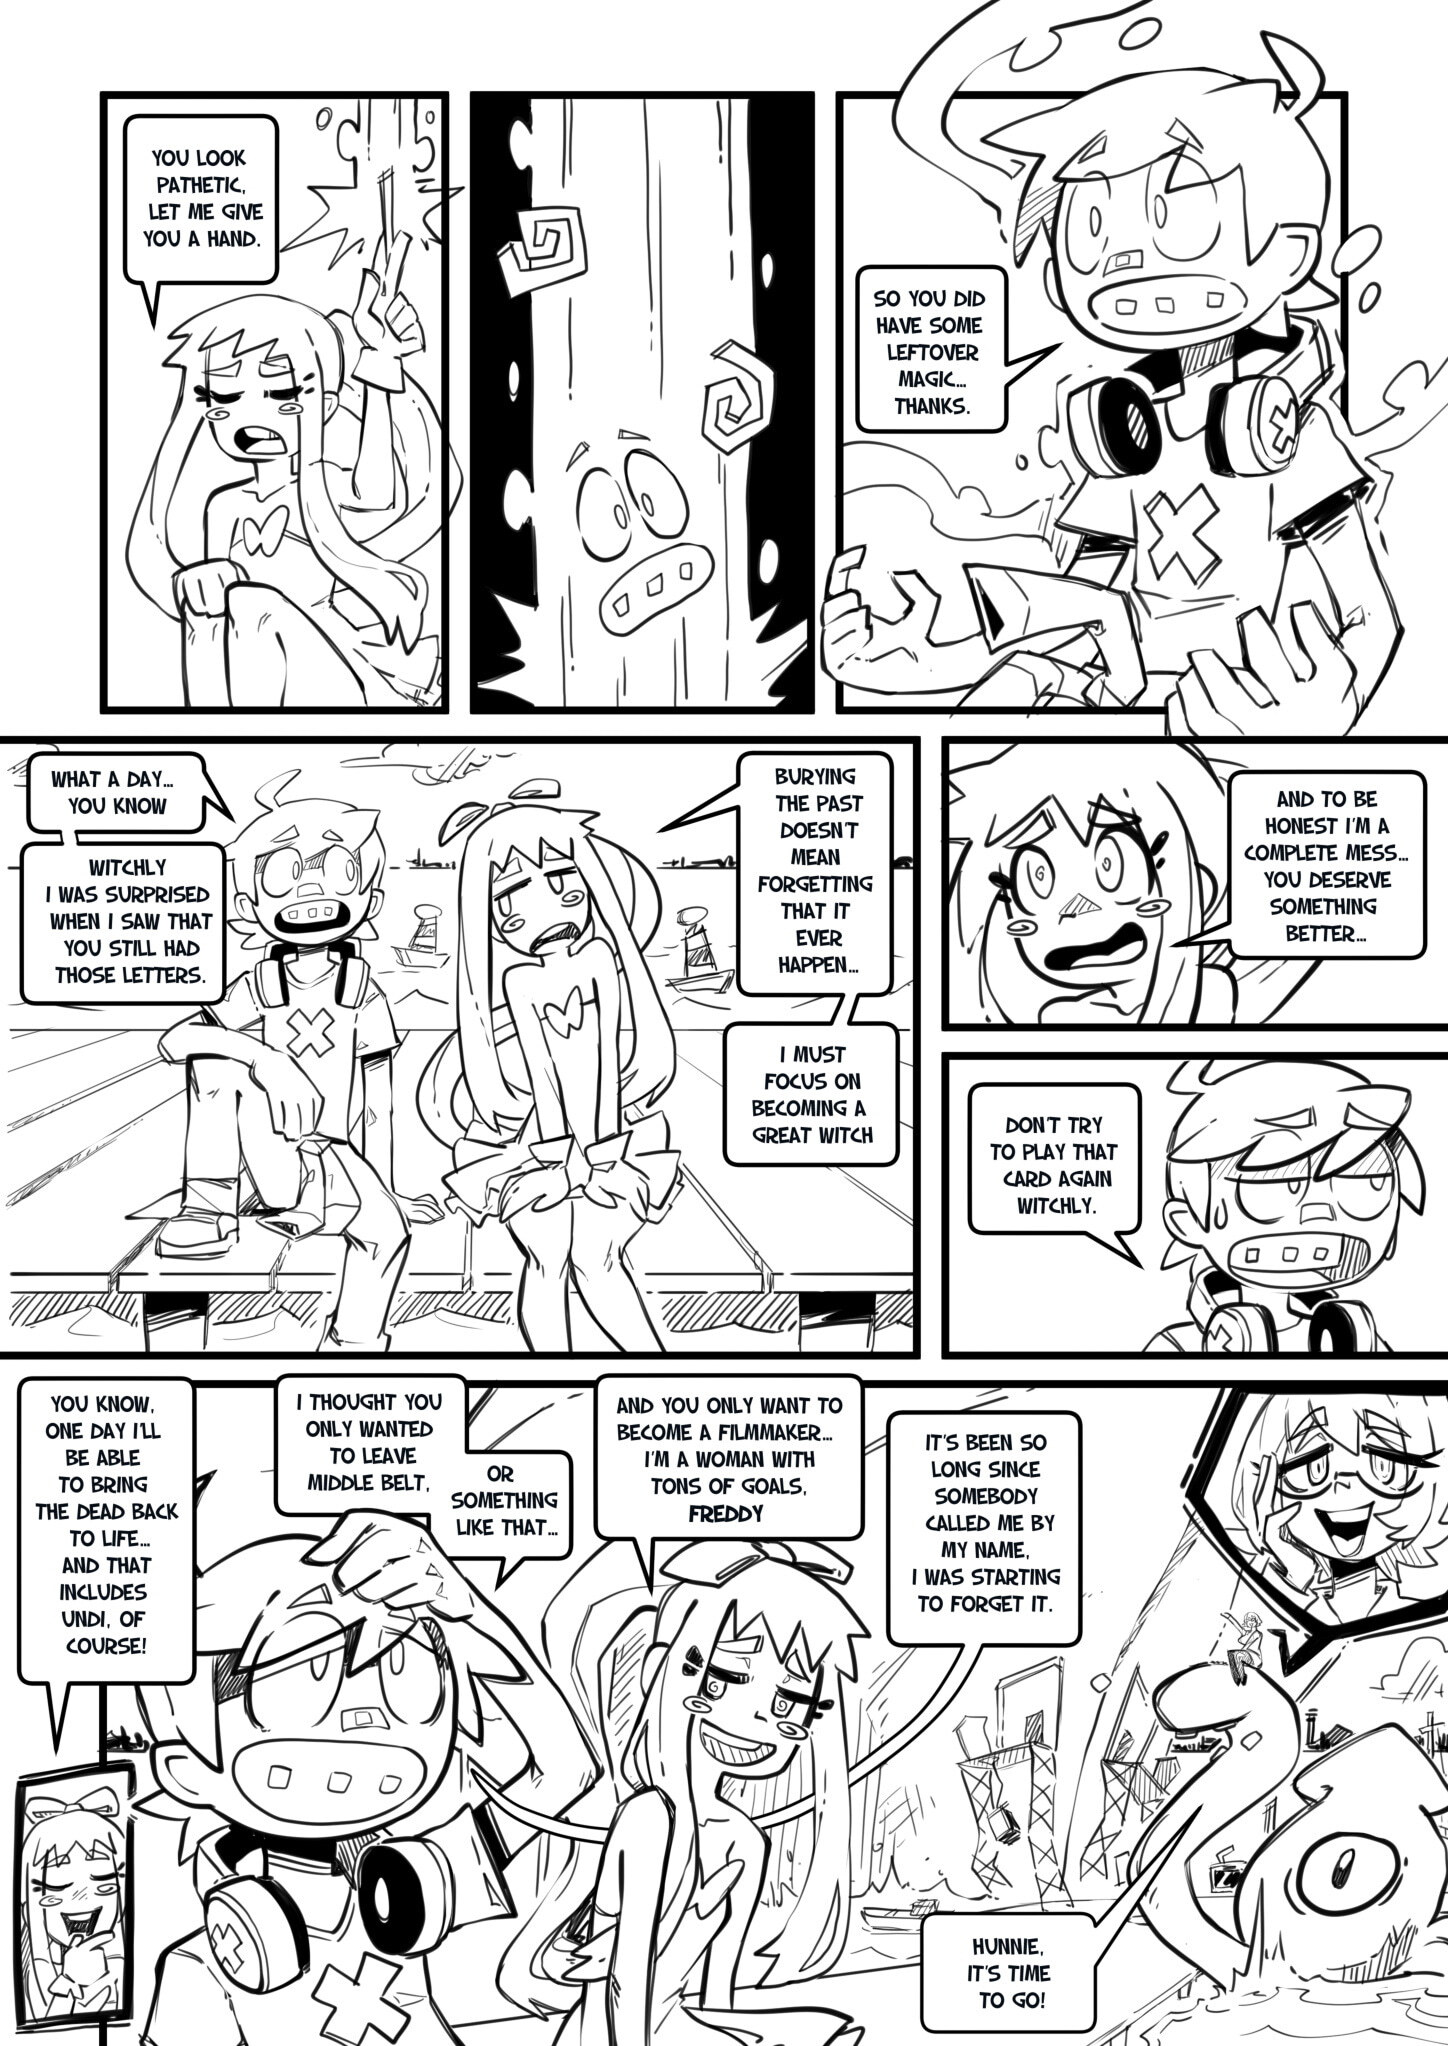 Skarpworld 10: Milk Crisis 4 - Gravity - Page 32